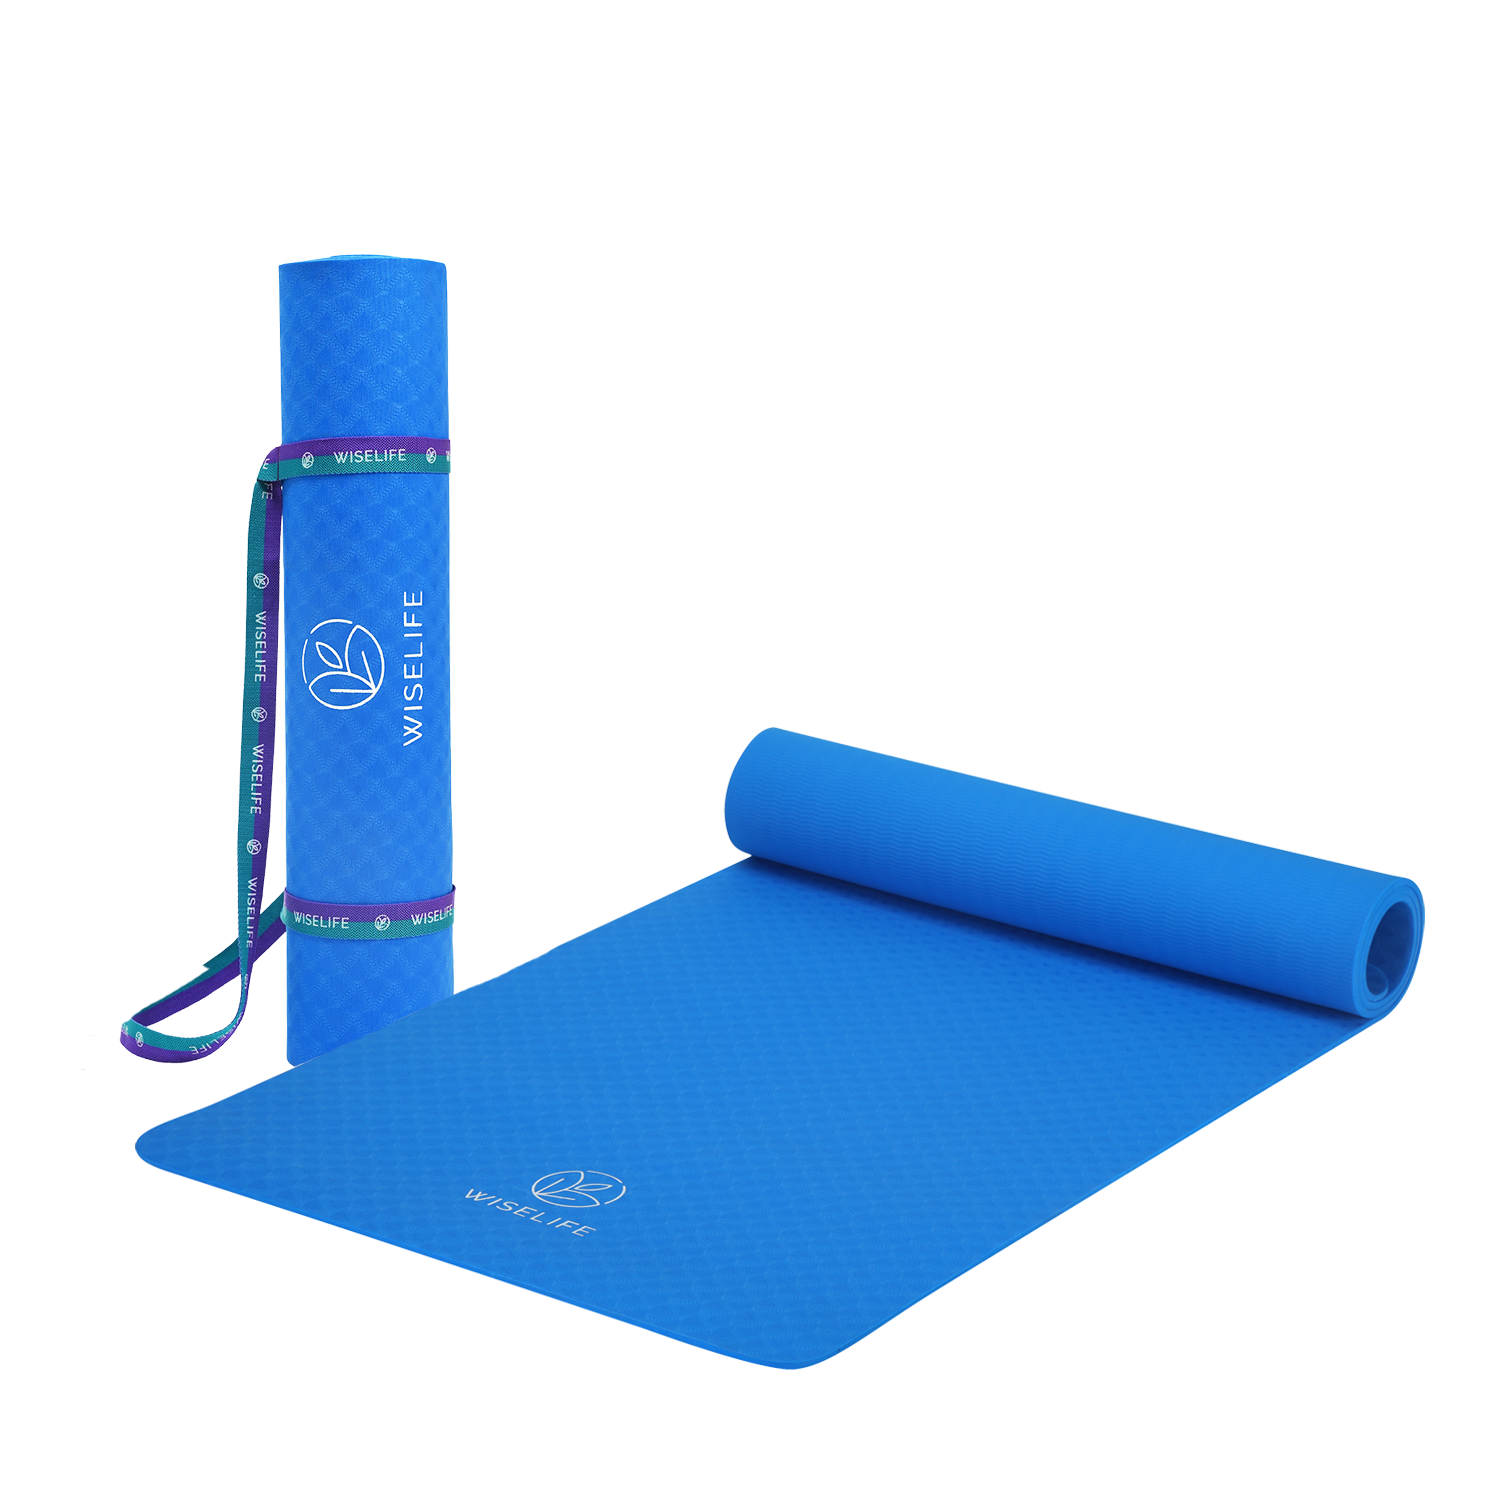 WiseLife Teal Yoga Block Set + Blue Yoga Belt